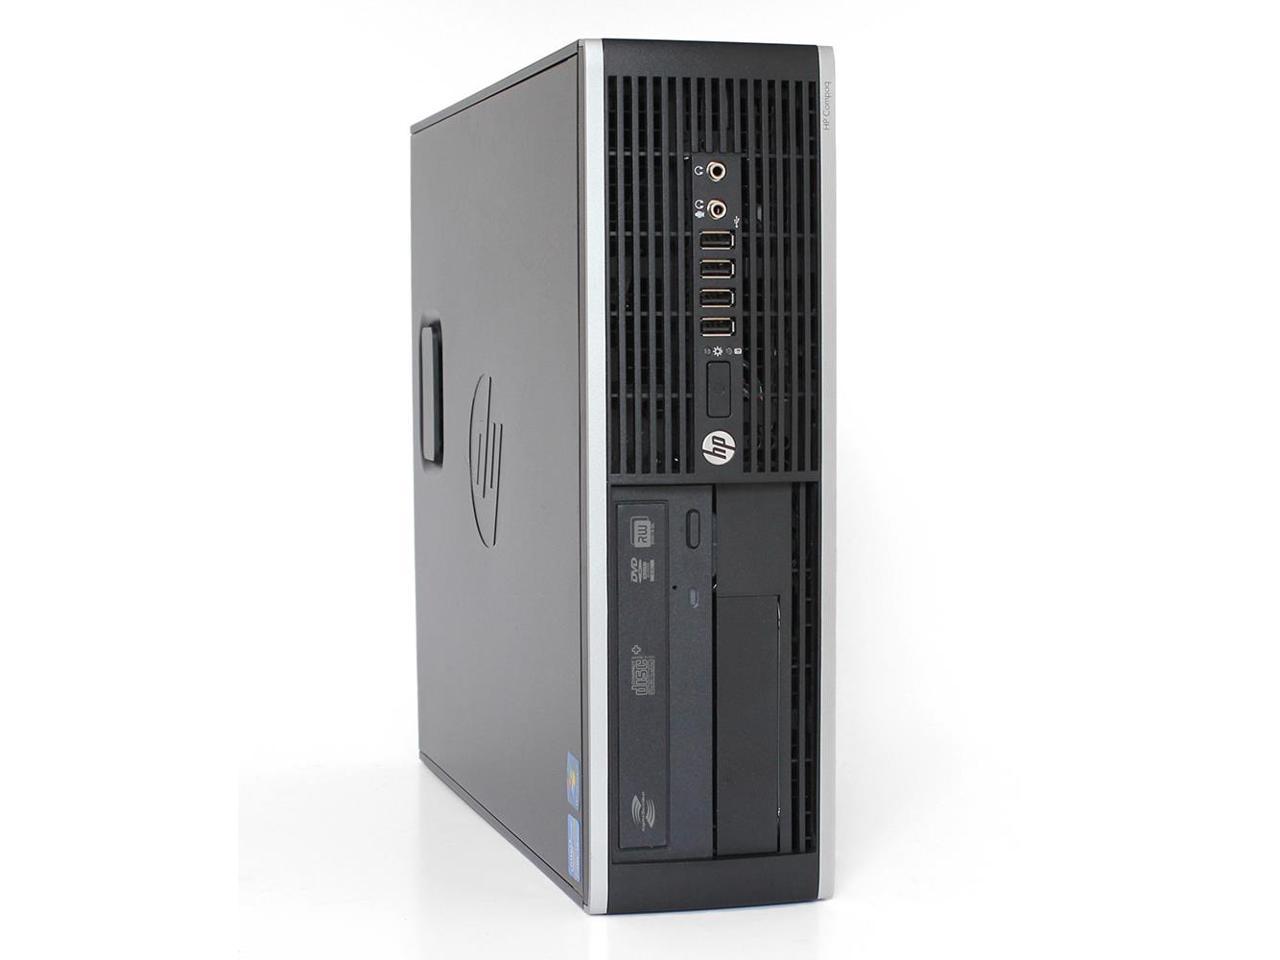 Sistem Desktop PC, Hp,  8200, Intel® CoreTM i3-2120, 3.30GHz, 8GB DDR3, 500GB HDD, DVD